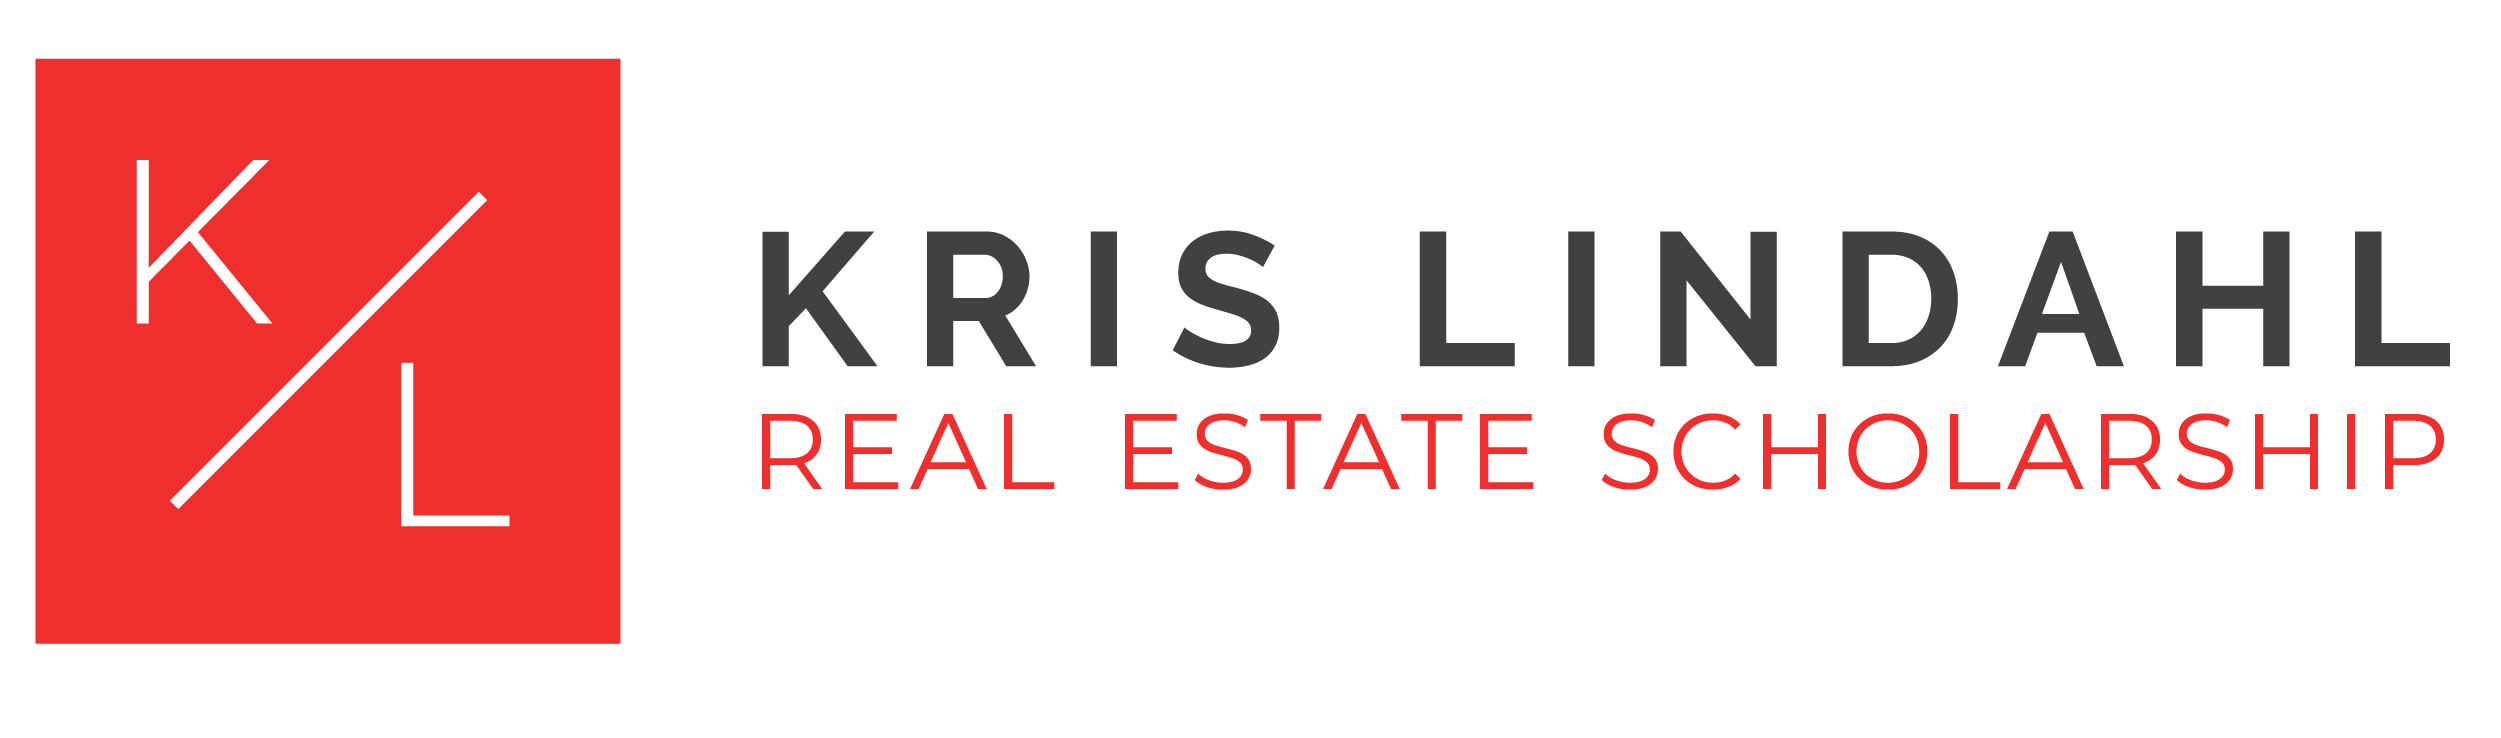 KLRE Real Estate Scholarship Logo-02